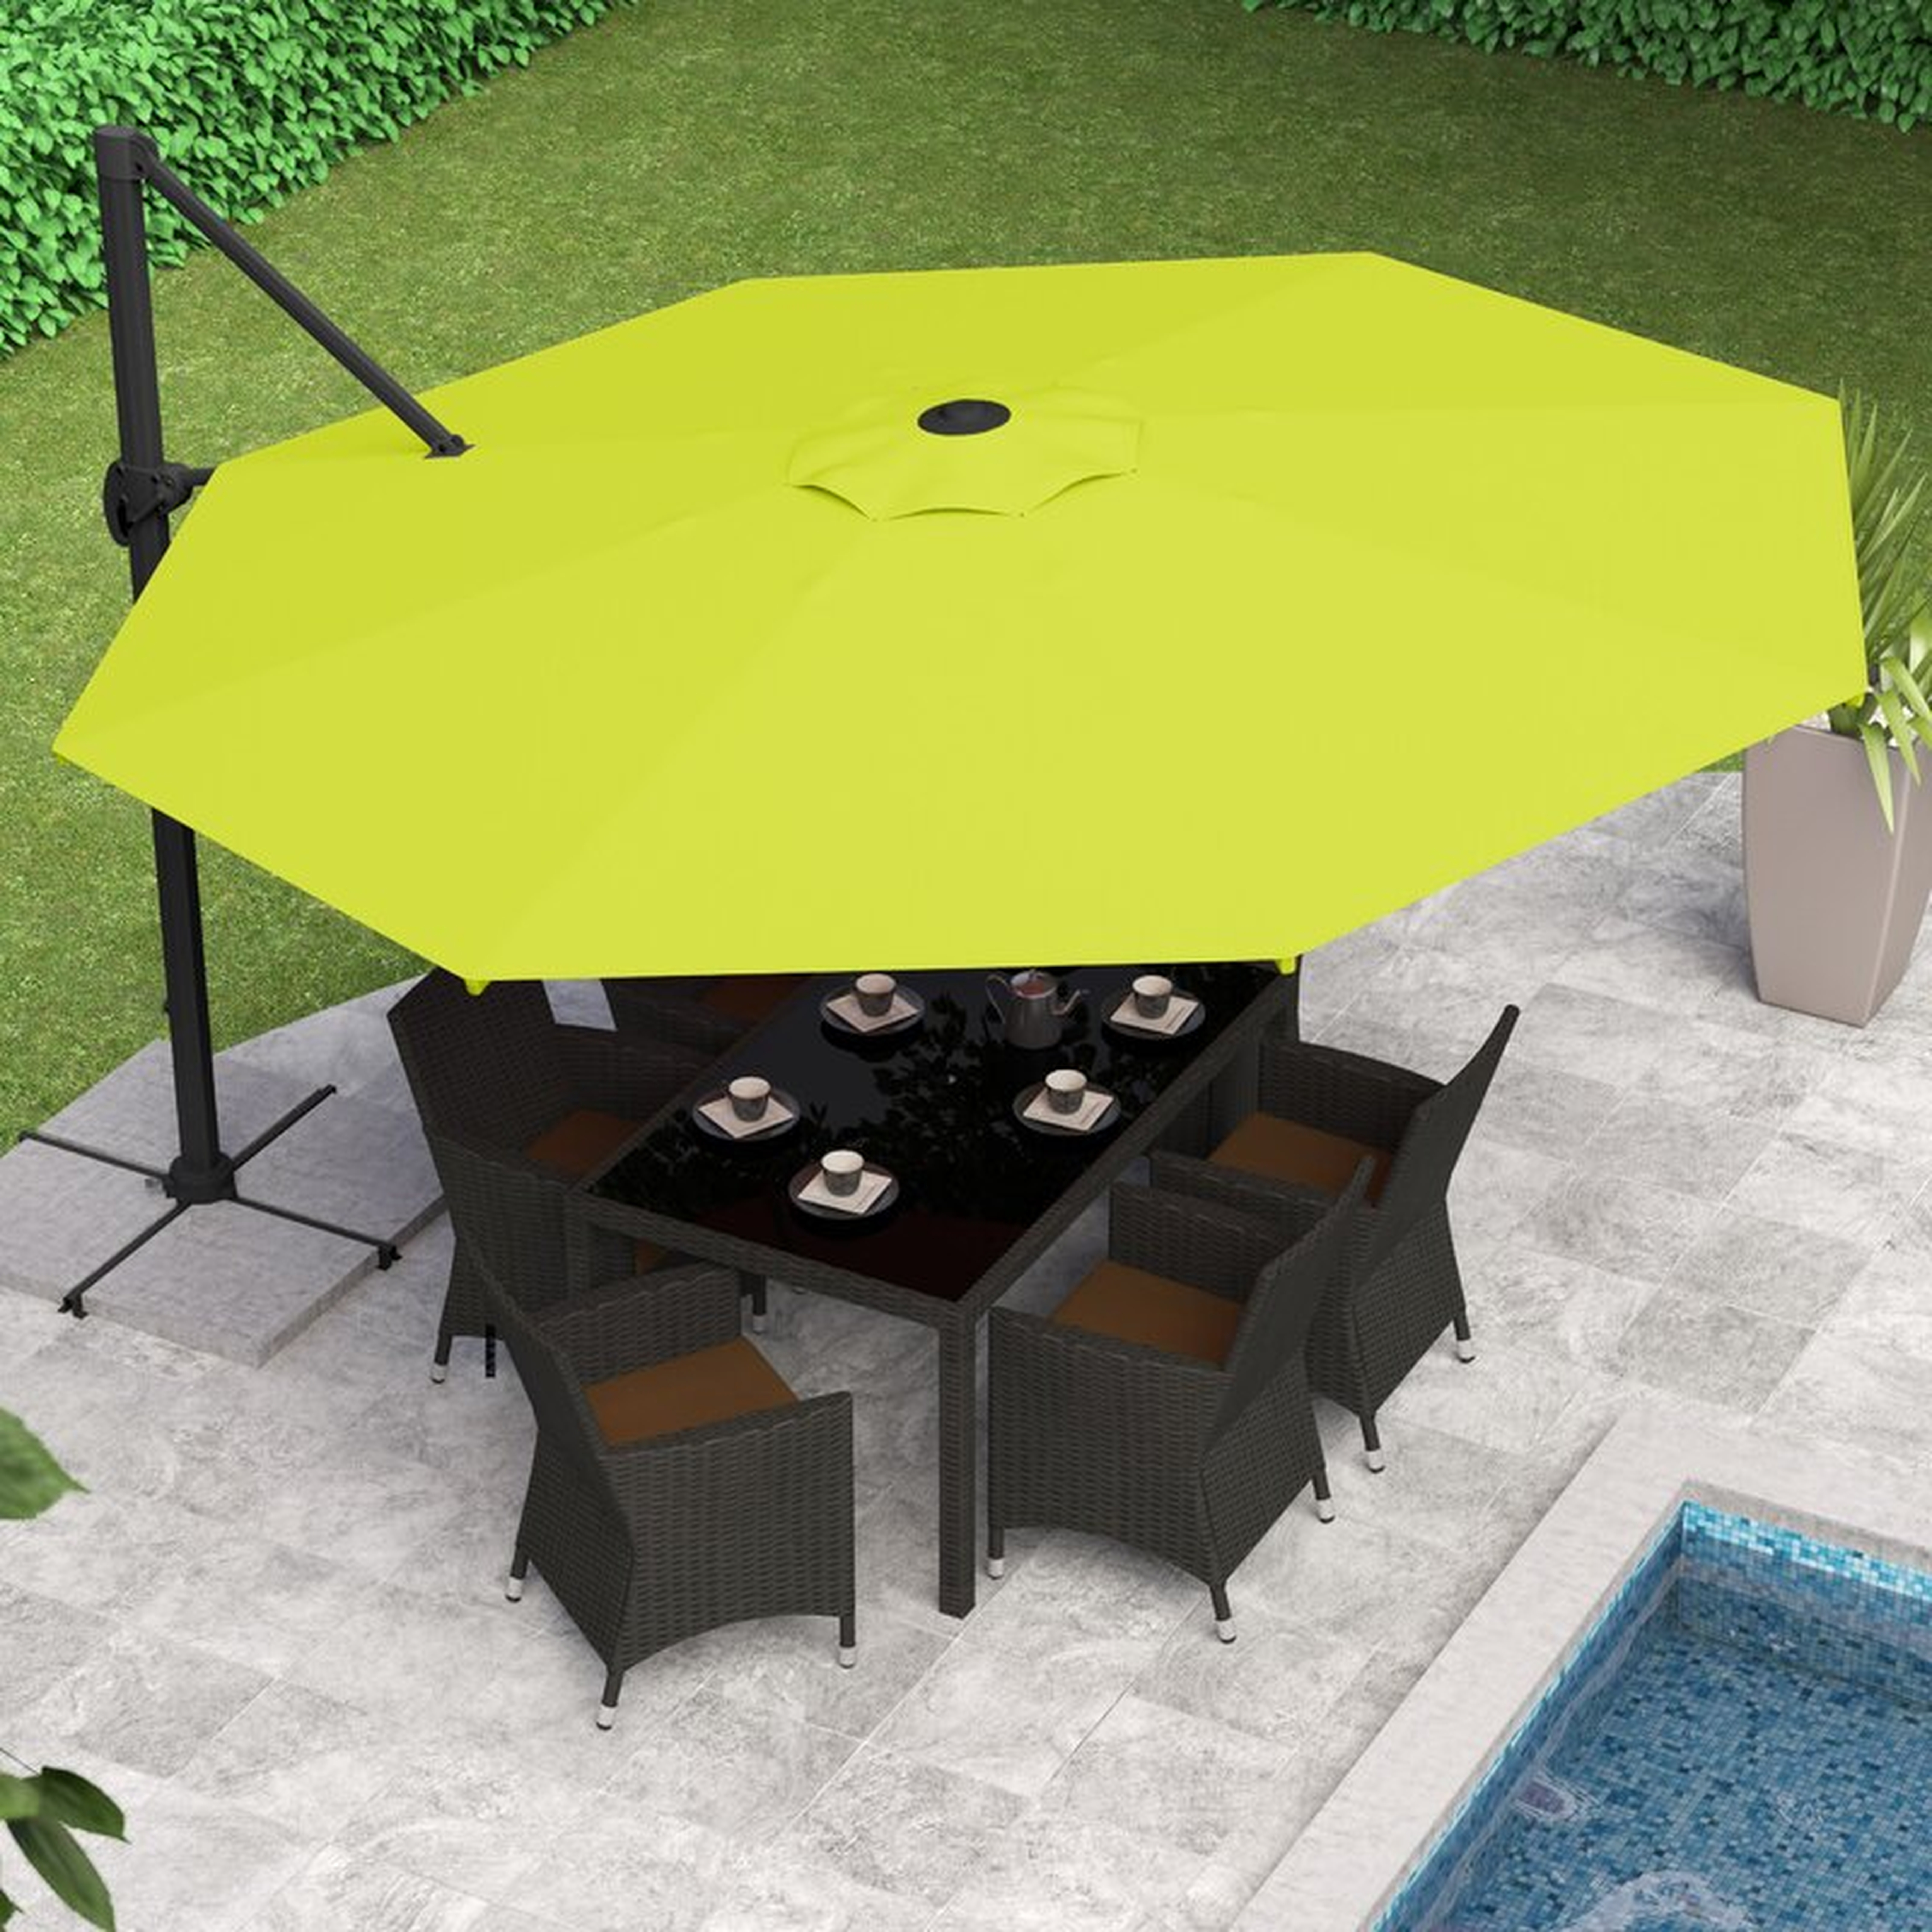 Gribble 11.5' Cantilever Umbrella - Wayfair